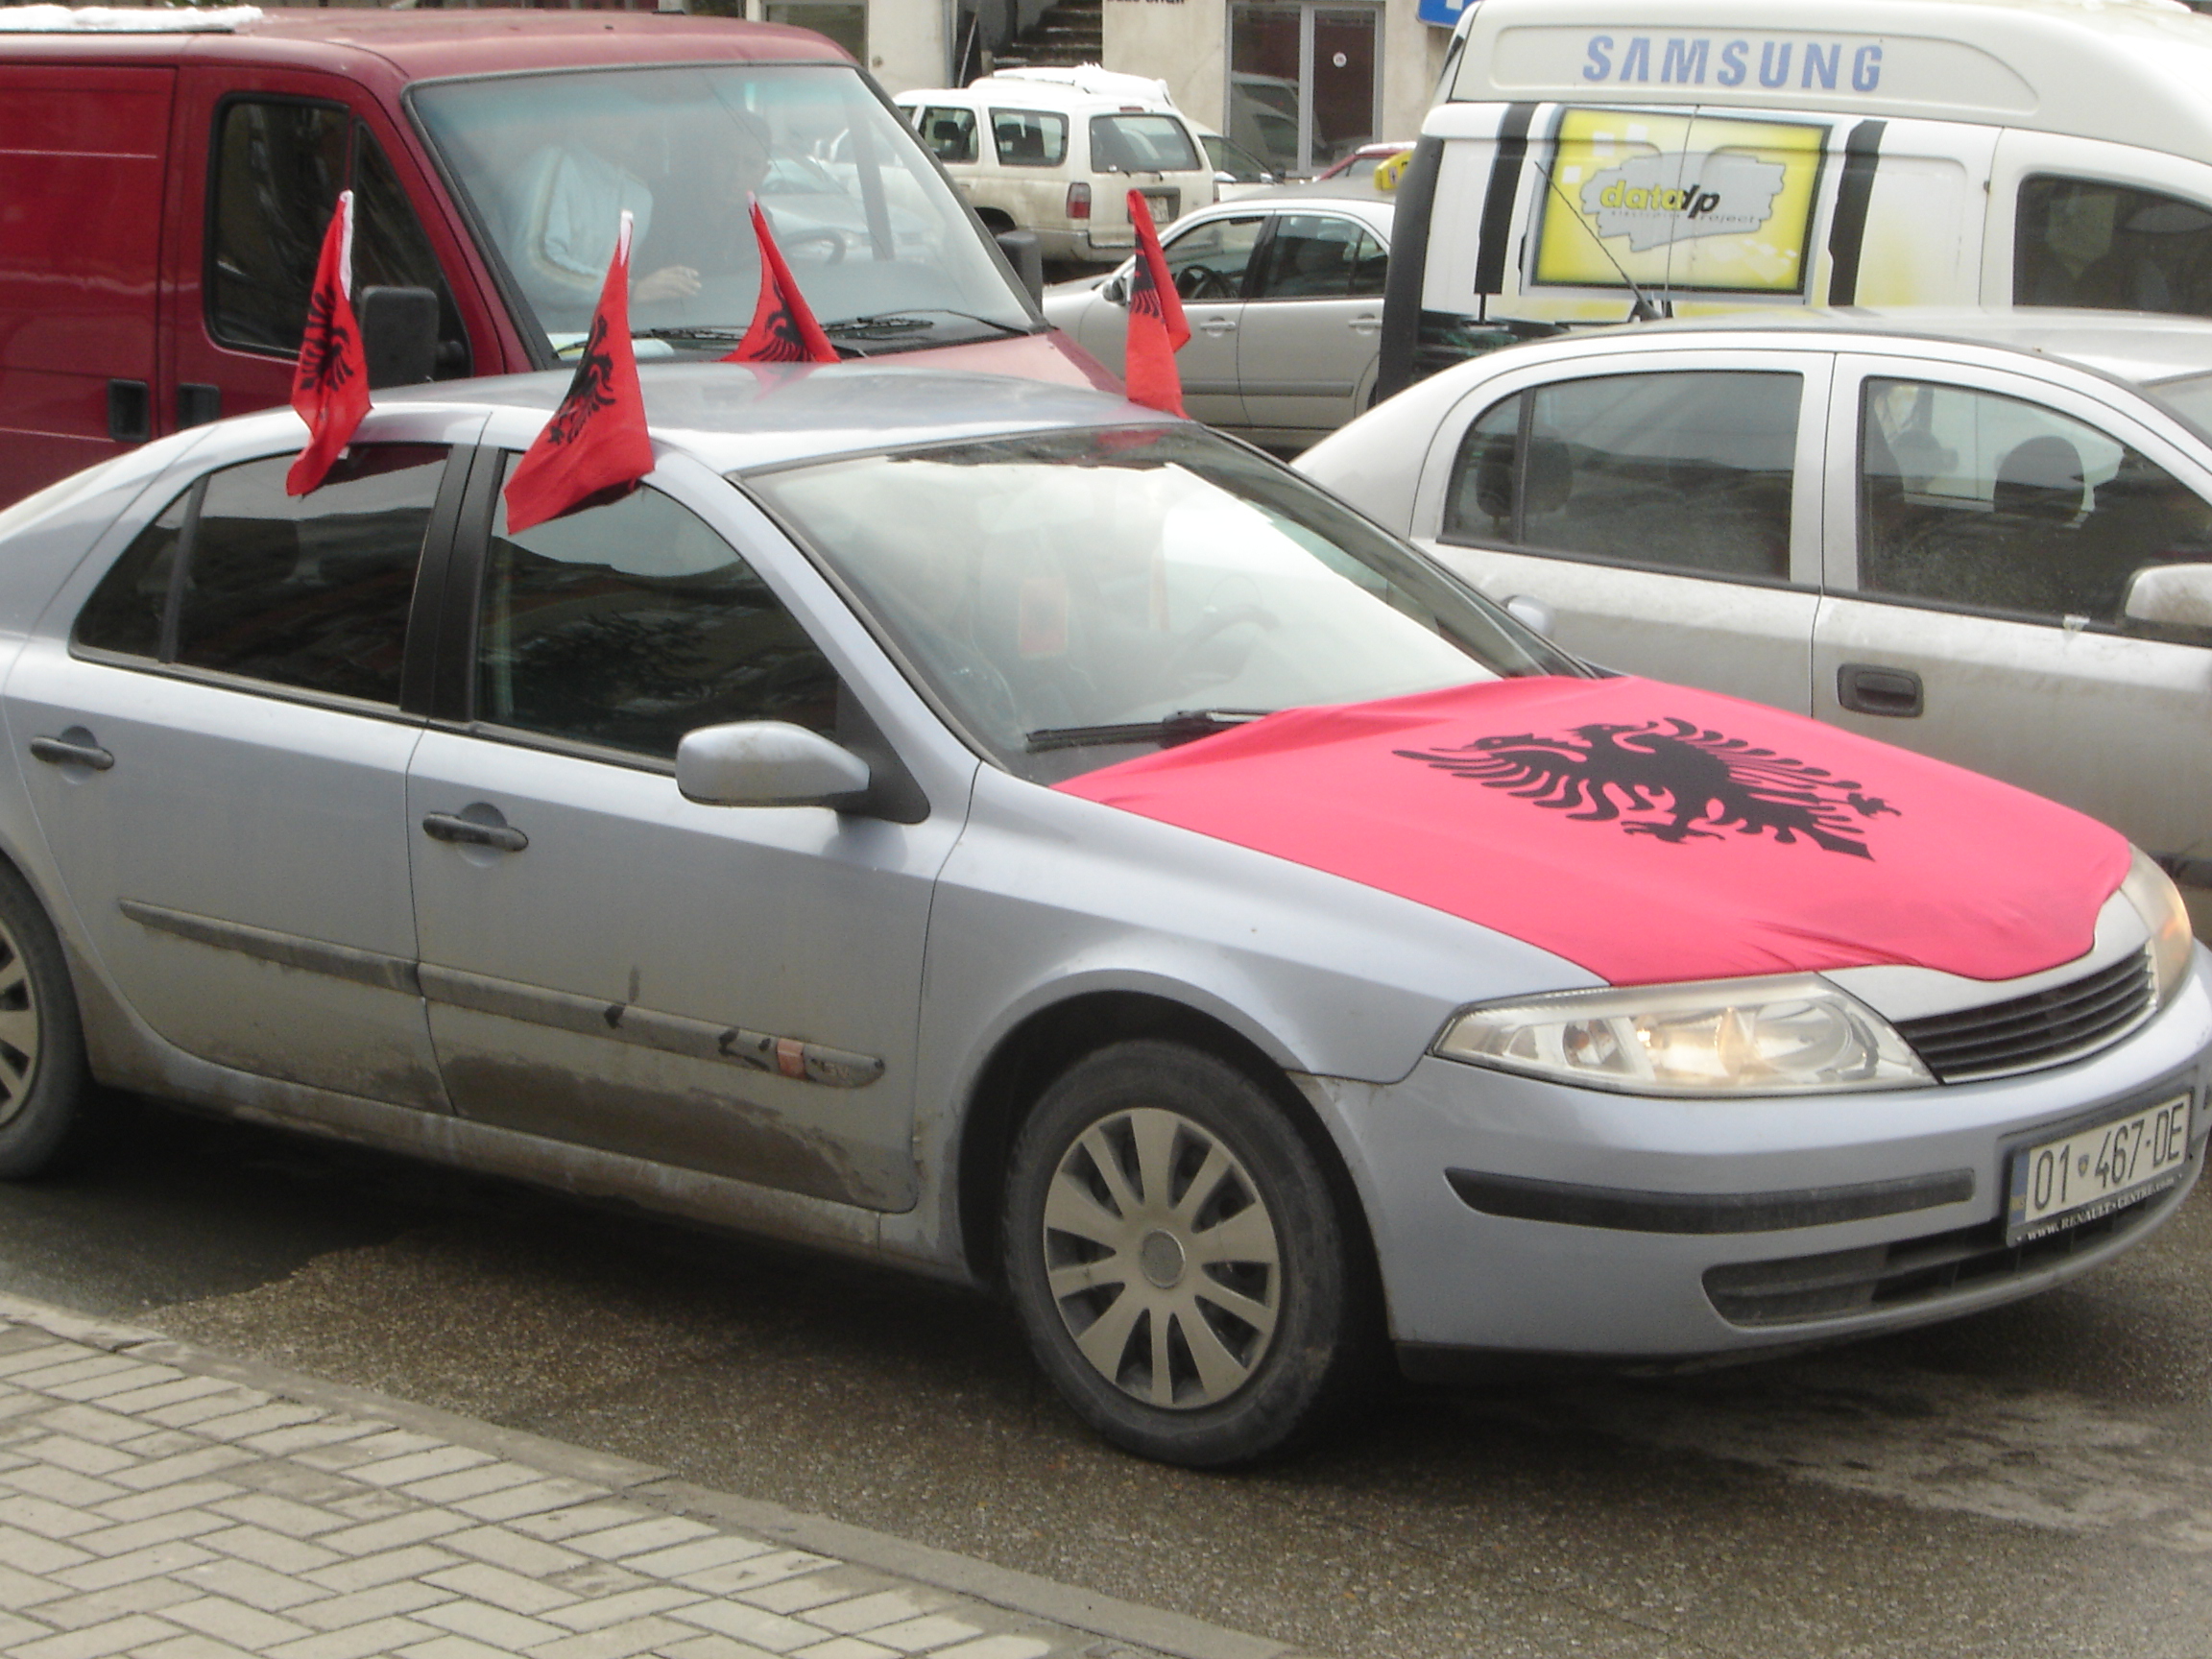 Σκόπια: Η μισή χώρα γέμισε με αλβανικές σημαίες